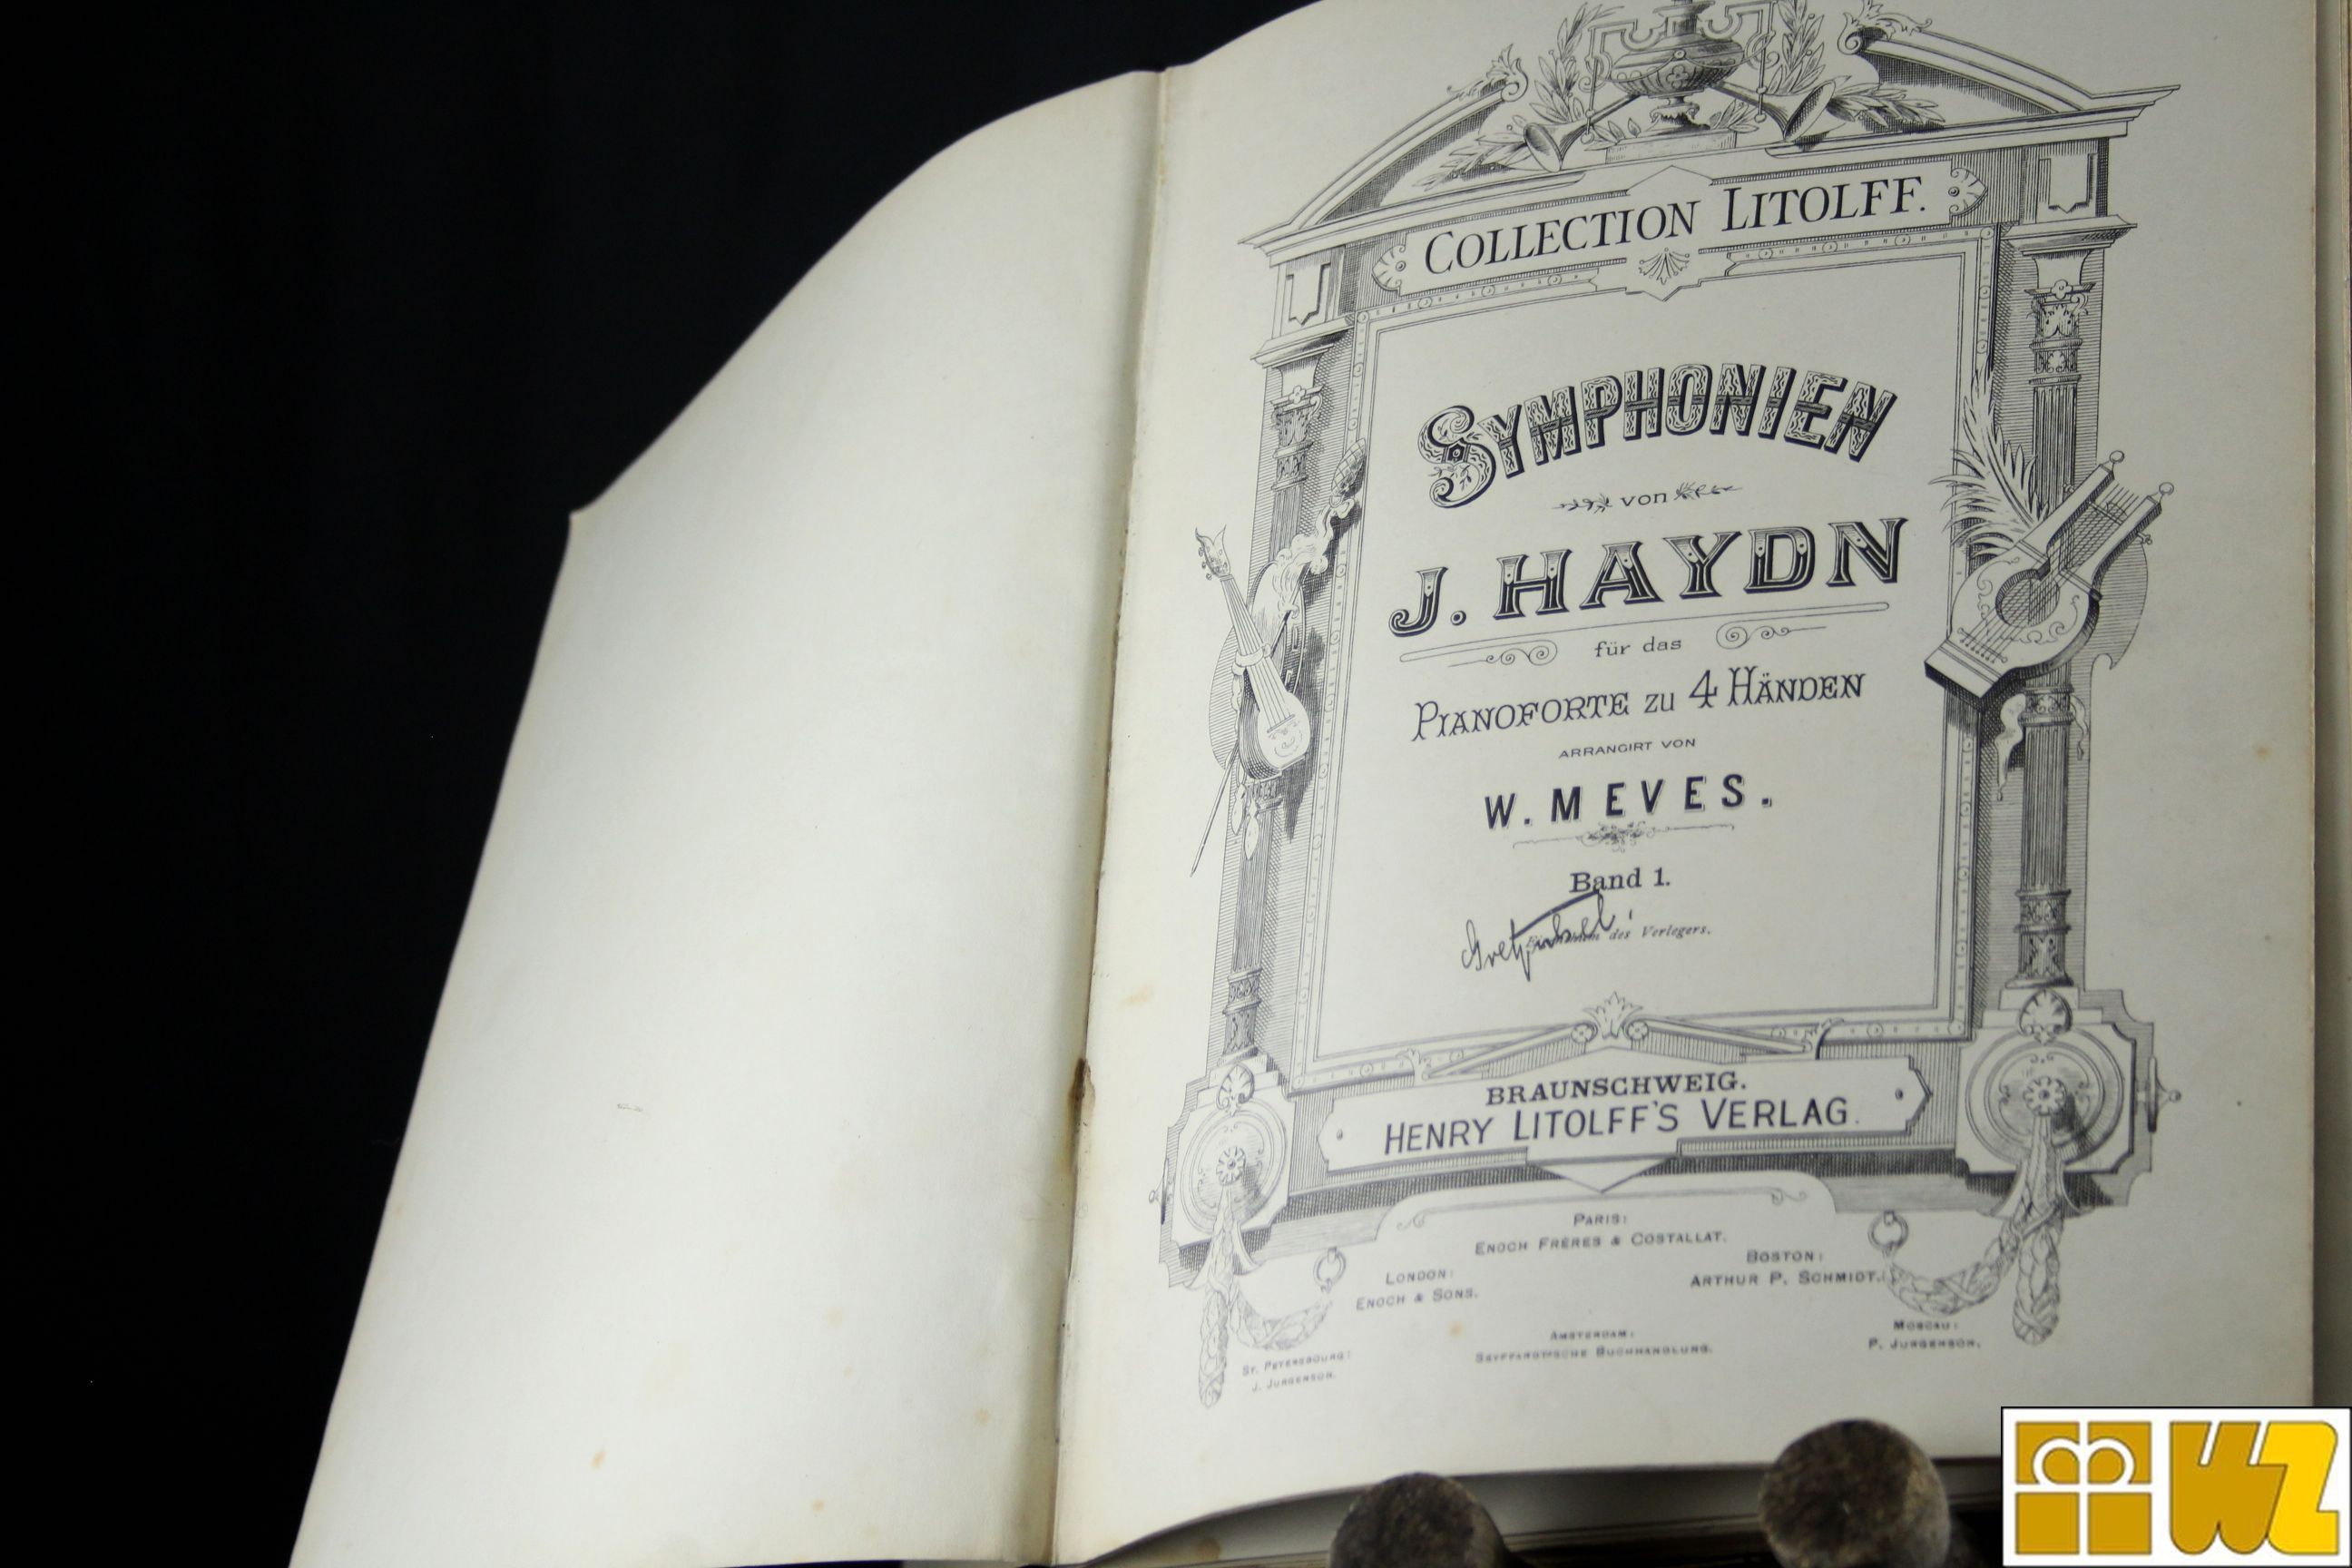 Collection Litolff No. 57 - Symphonien von J. Haydn, antiquarisch